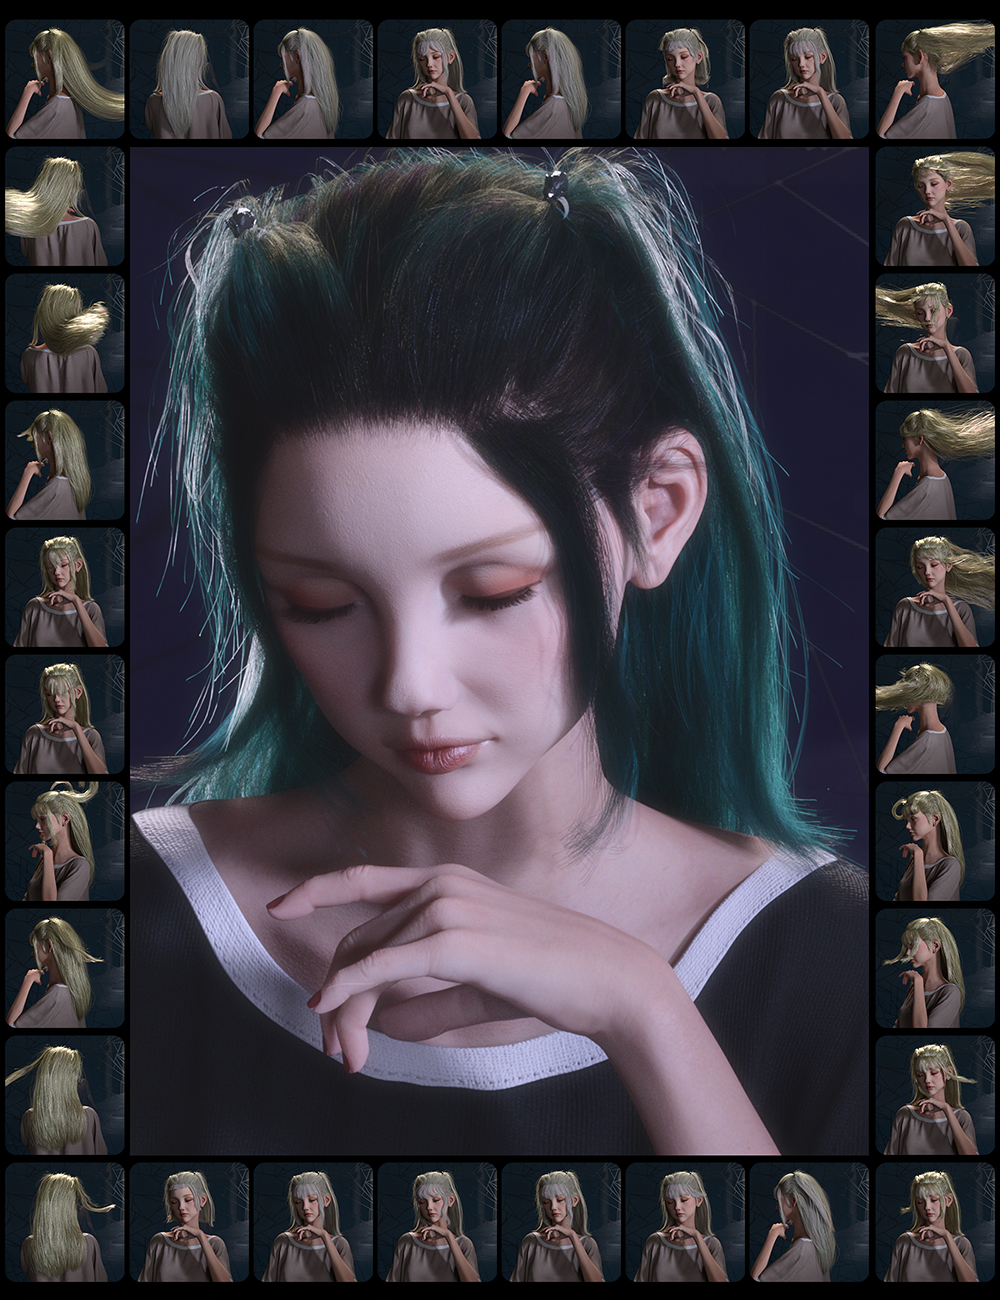 dForce Kids Cute Hair for Genesis 8 and Genesis 8.1 Females by: Nirvana, 3D Models by Daz 3D